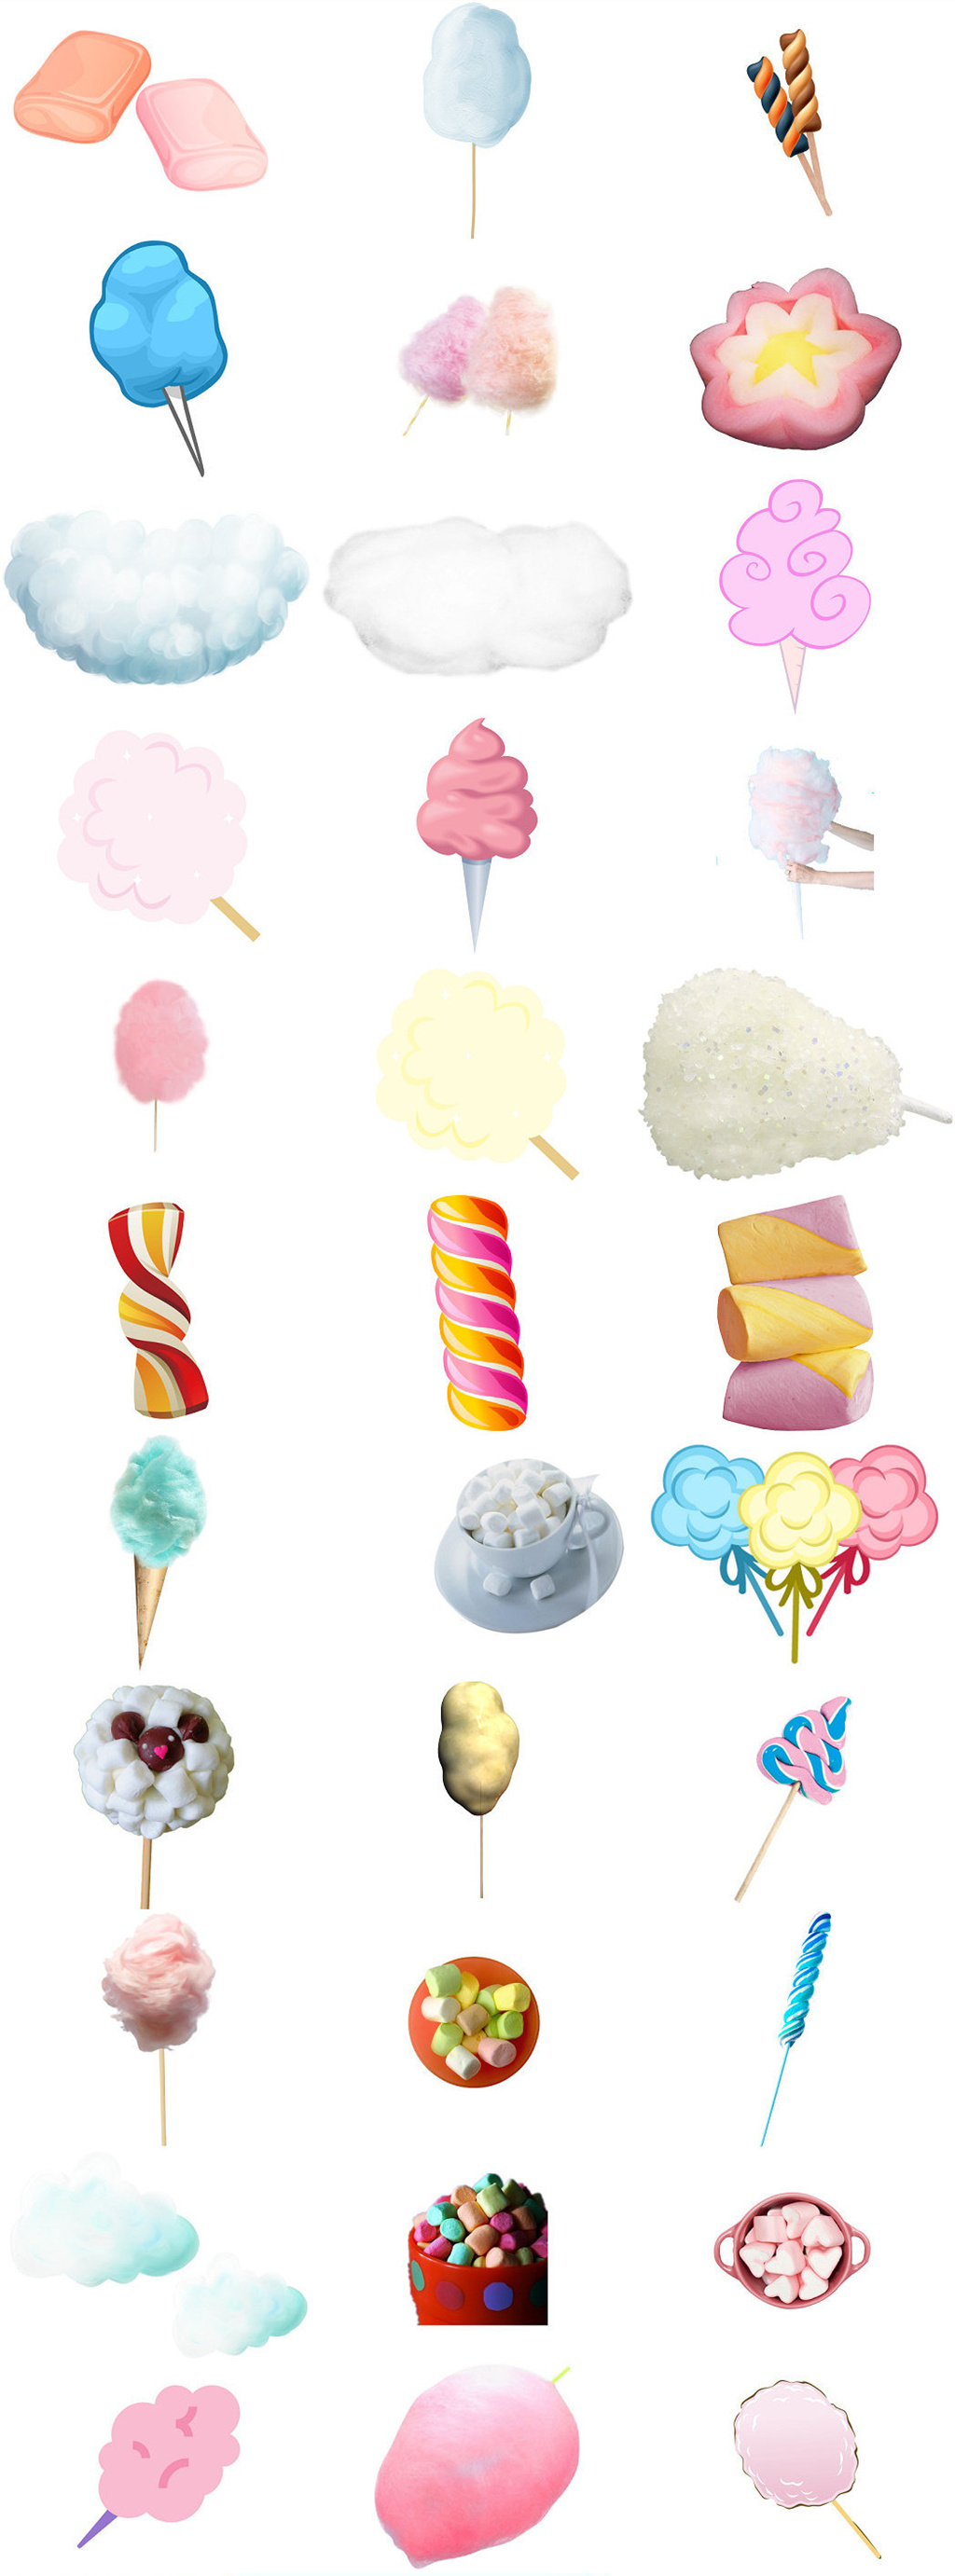 棉花糖广告 设计图图片